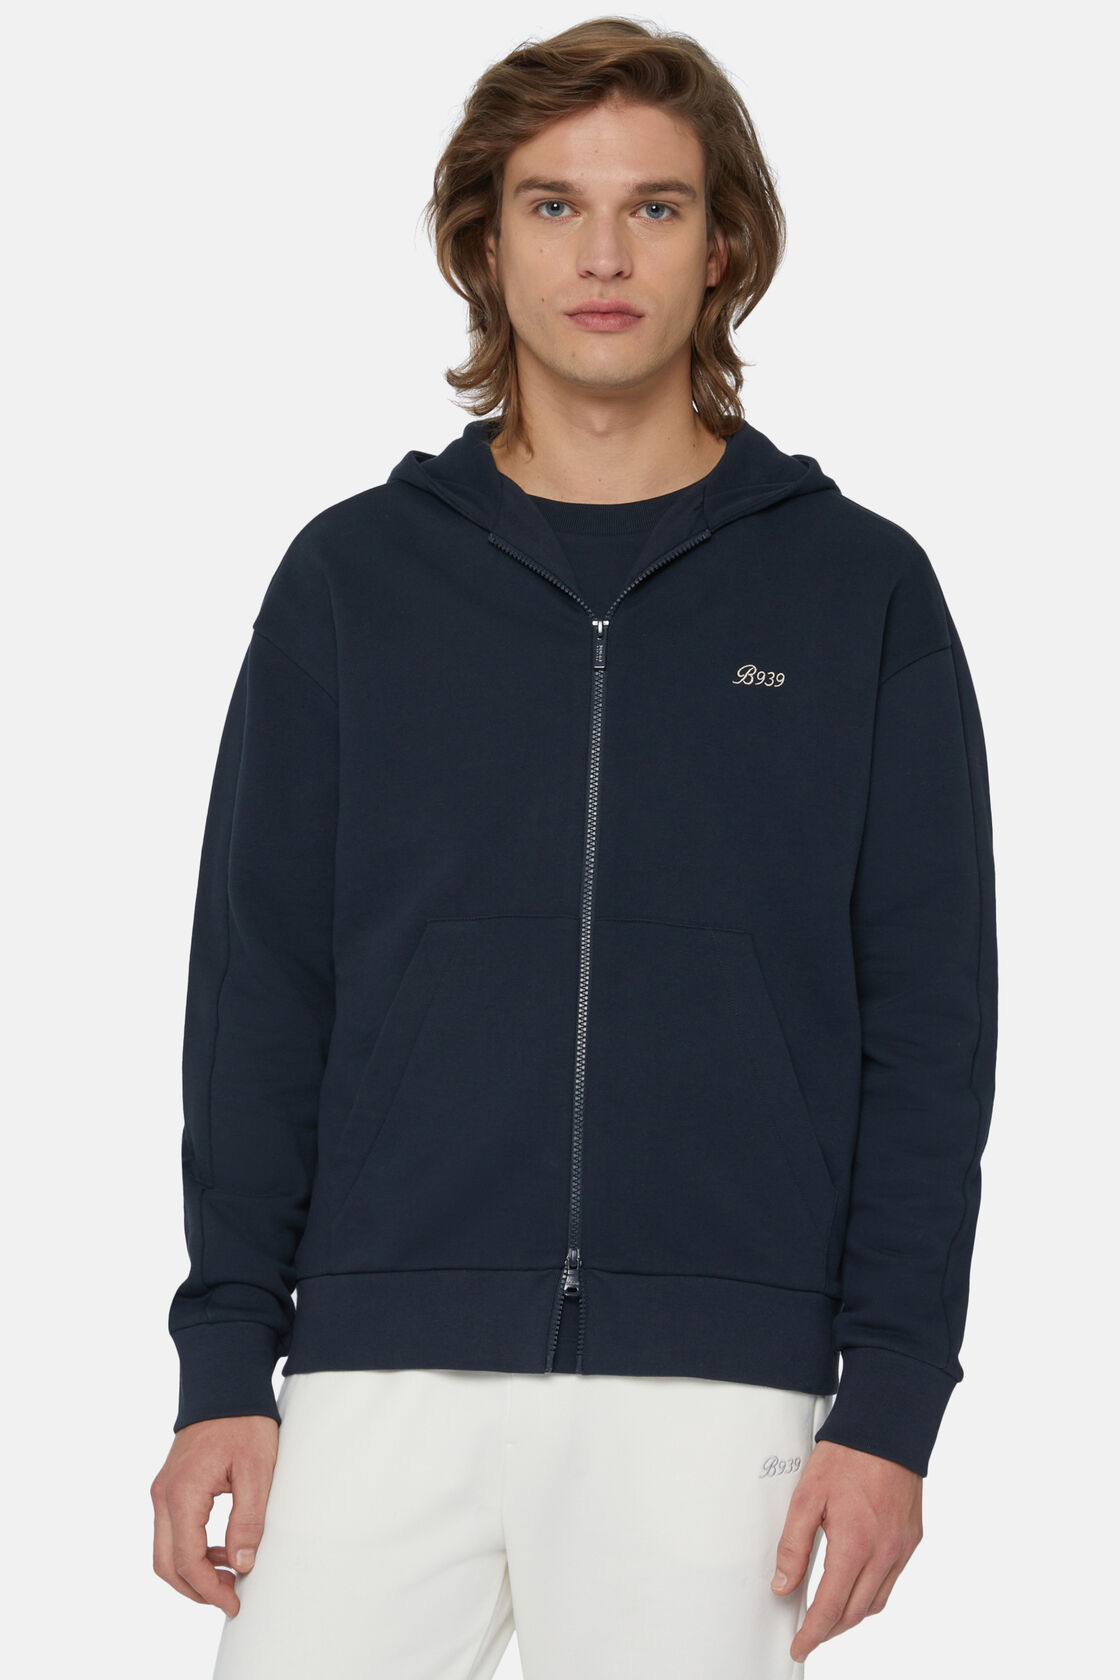 Full Zip Sweatshirt In Organic Cotton Blend, Navy blue, hi-res